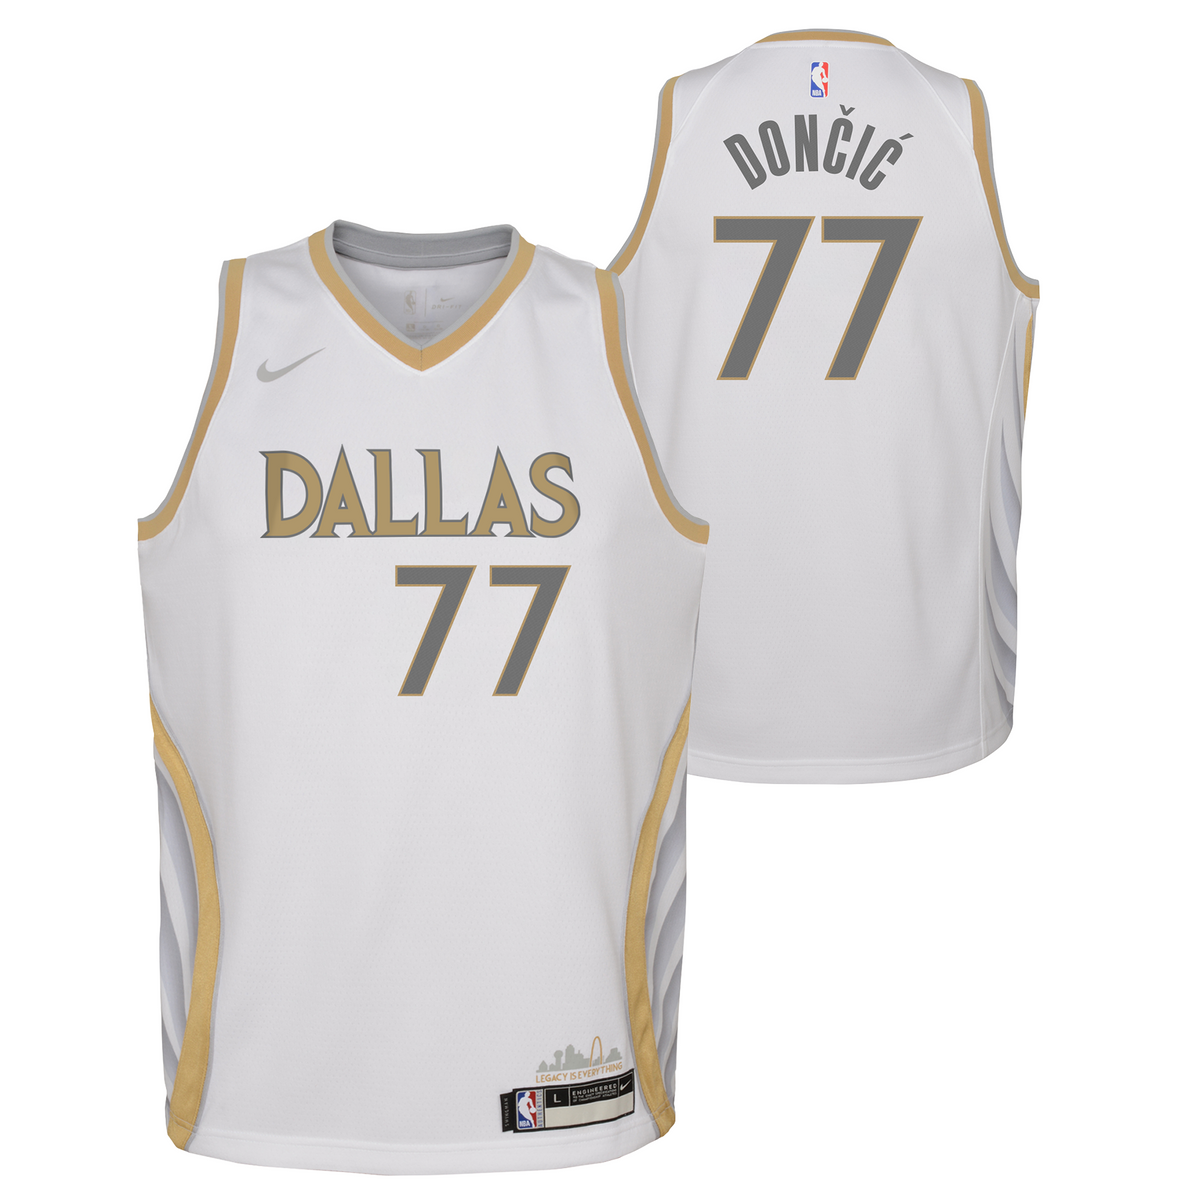 Nike, Shirts, Luka Doncic Dallas Mavs Nike Hardwood Classic Swingman  Jersey Size 4 Small